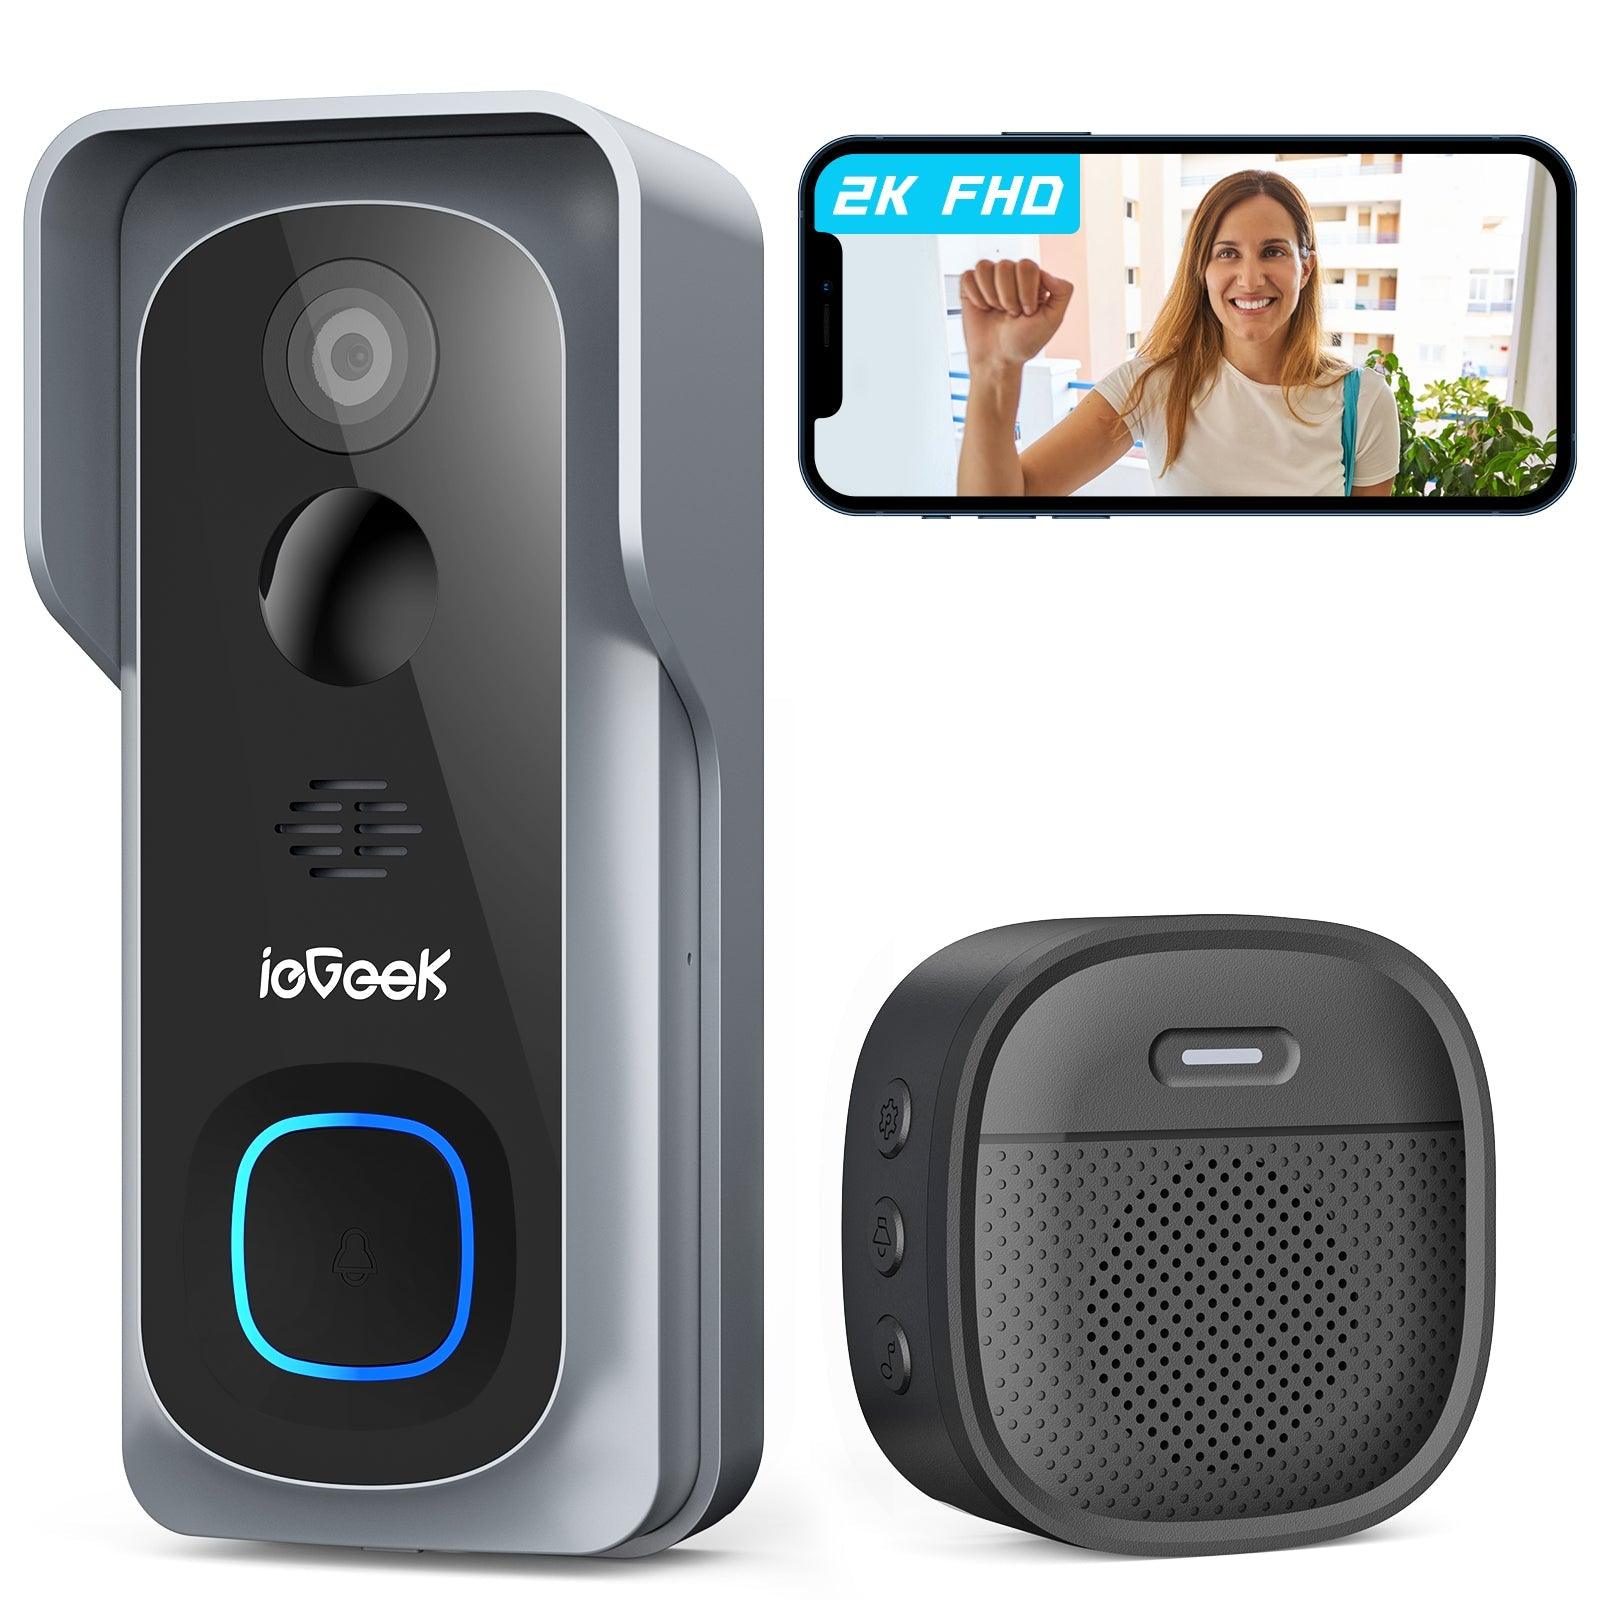 ieGeek Bell J1 - 2K Video Doorbell Camera with Wireless Doorbell